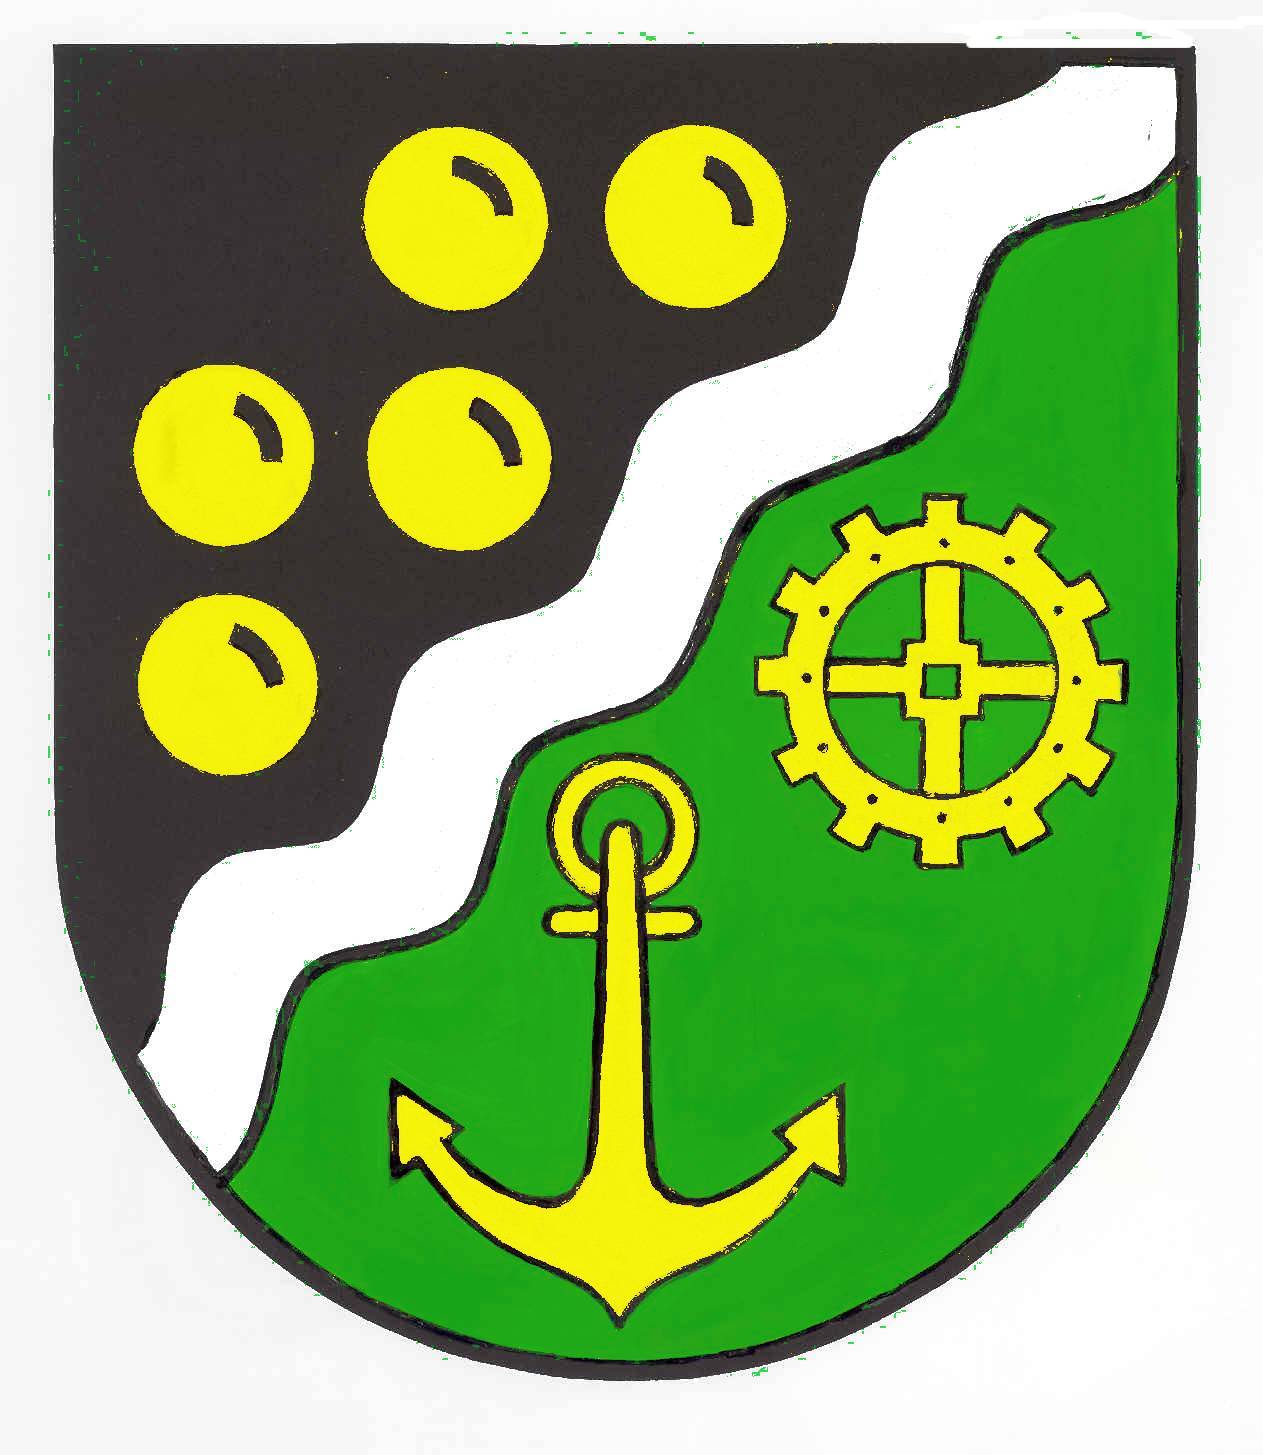 Wappen Gemeinde Moorrege, Kreis Pinneberg